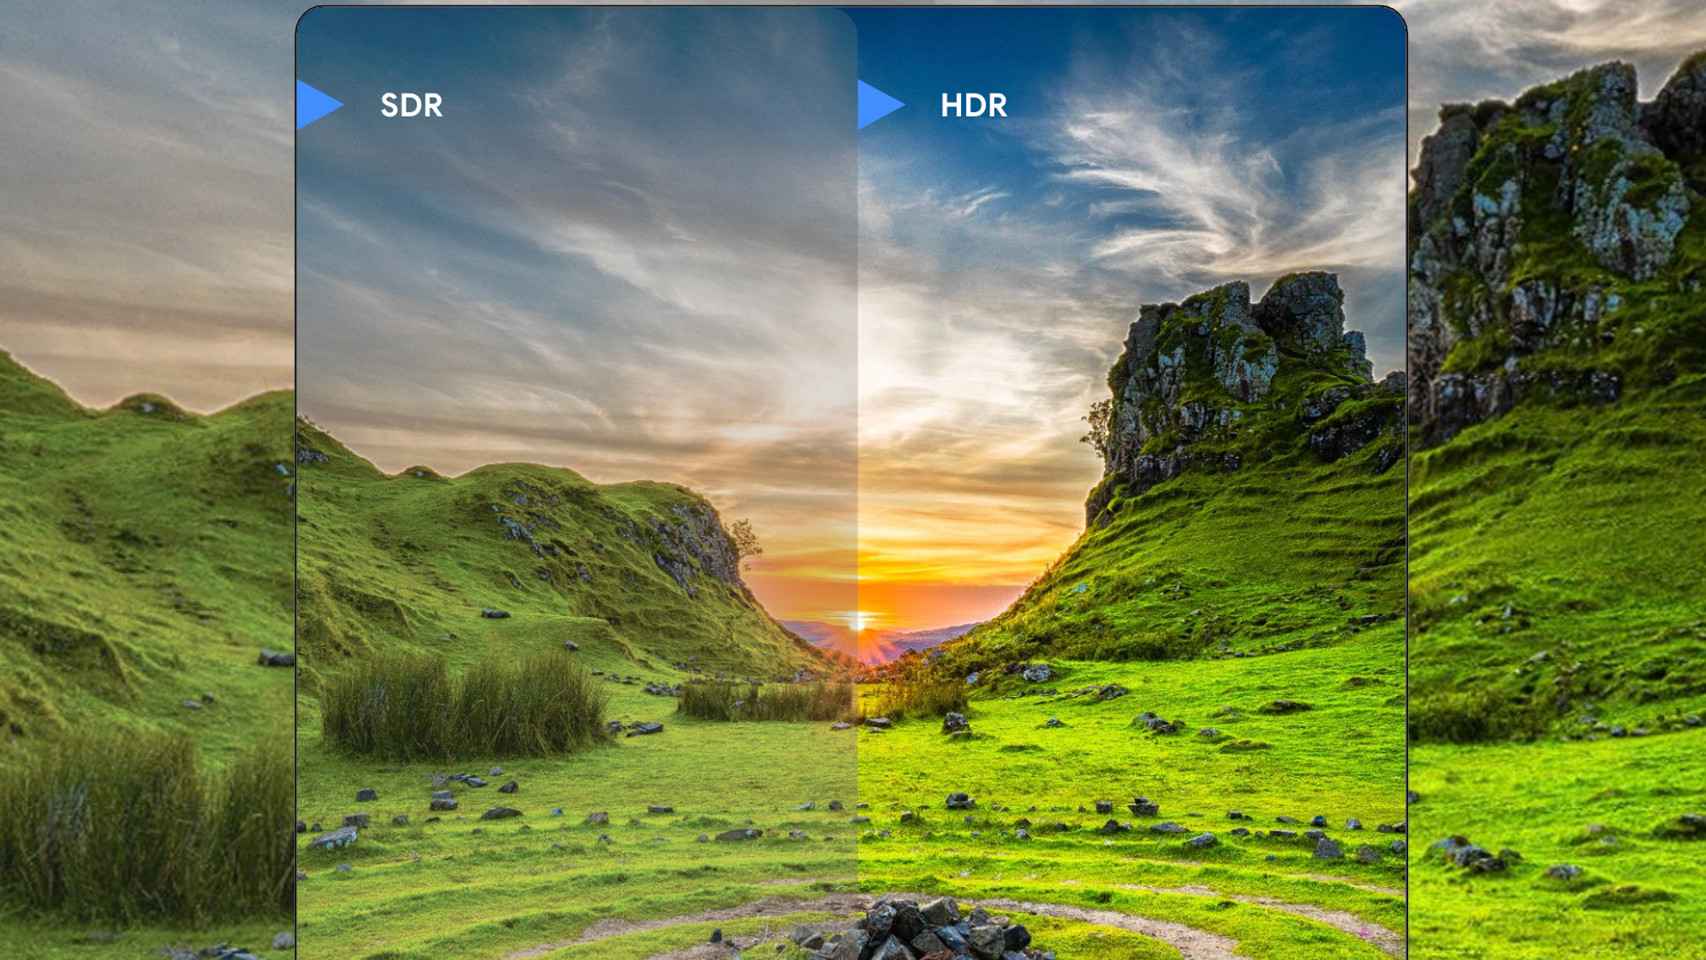 Cualquiera de tus aplicaciones favoritas puede tomar fotos Ultra HDR